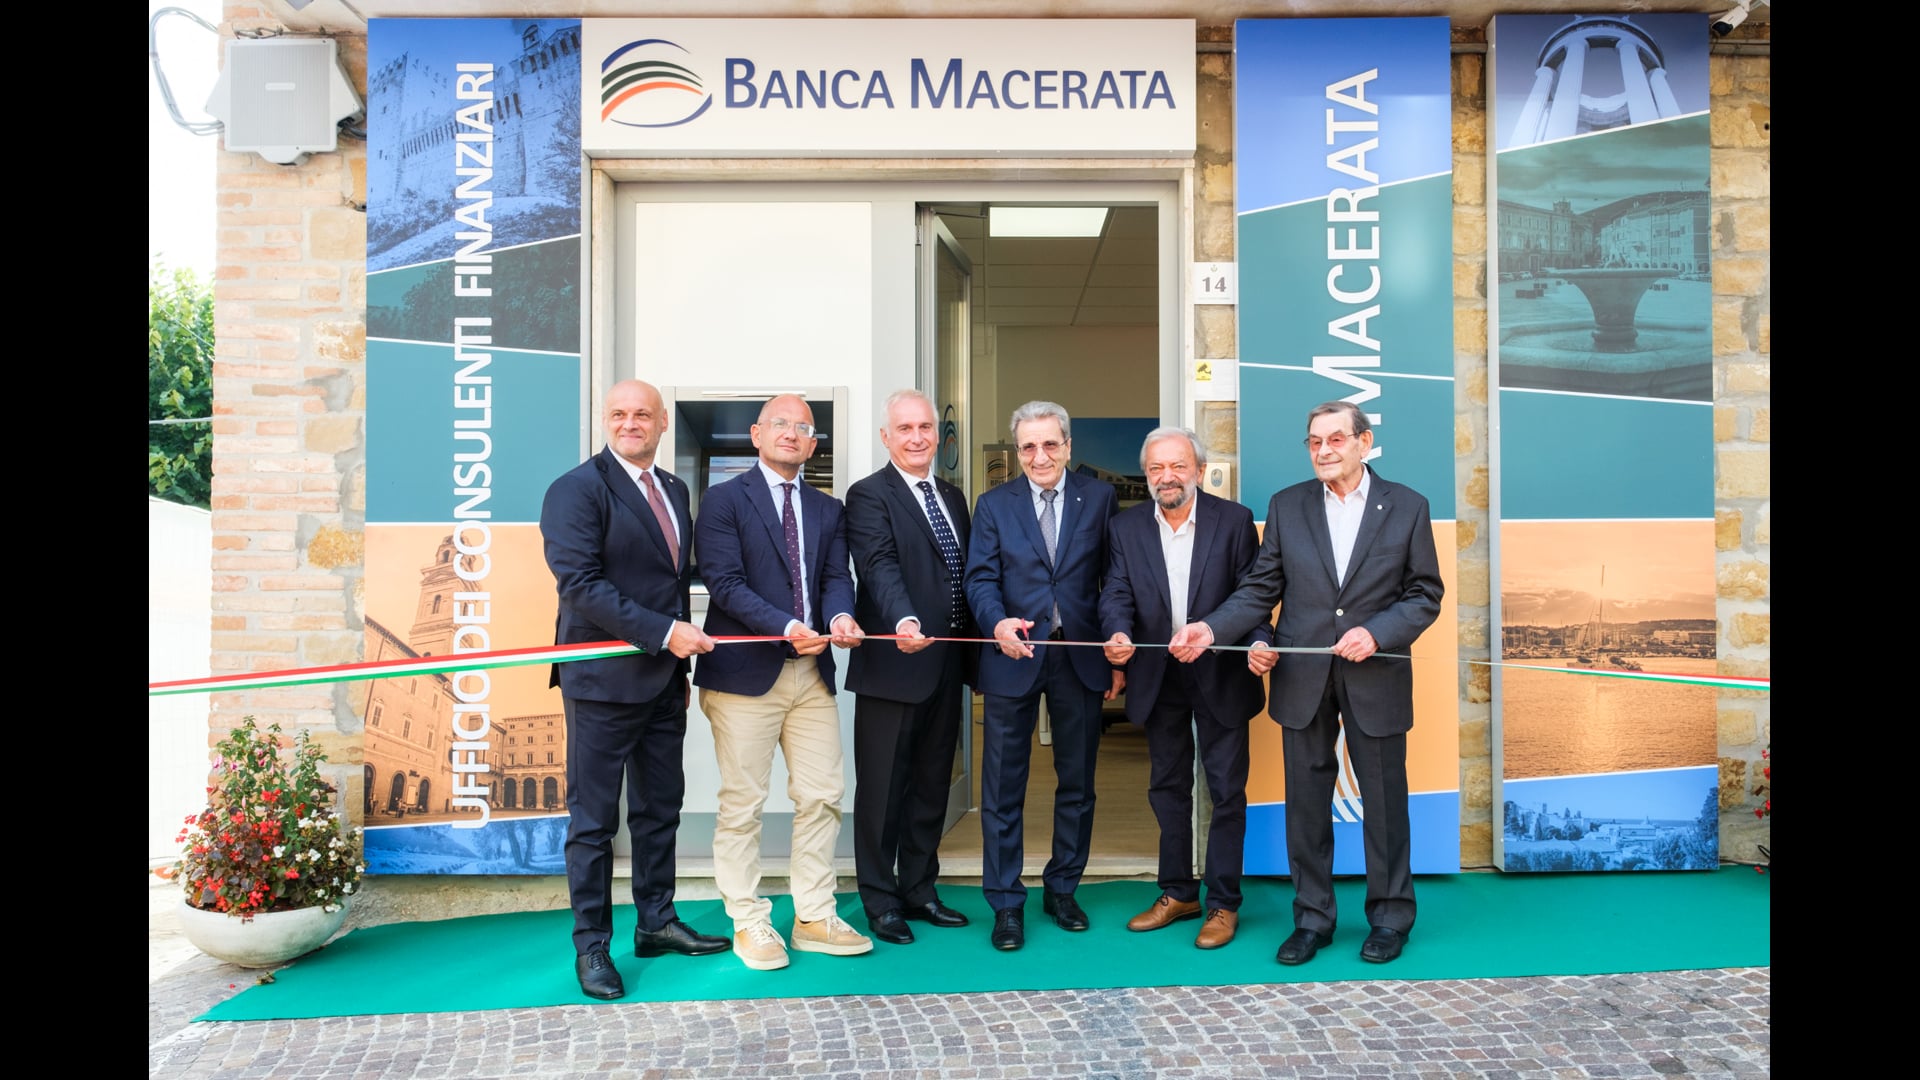 Banca Macerata apre a Gualdo - VIDEO